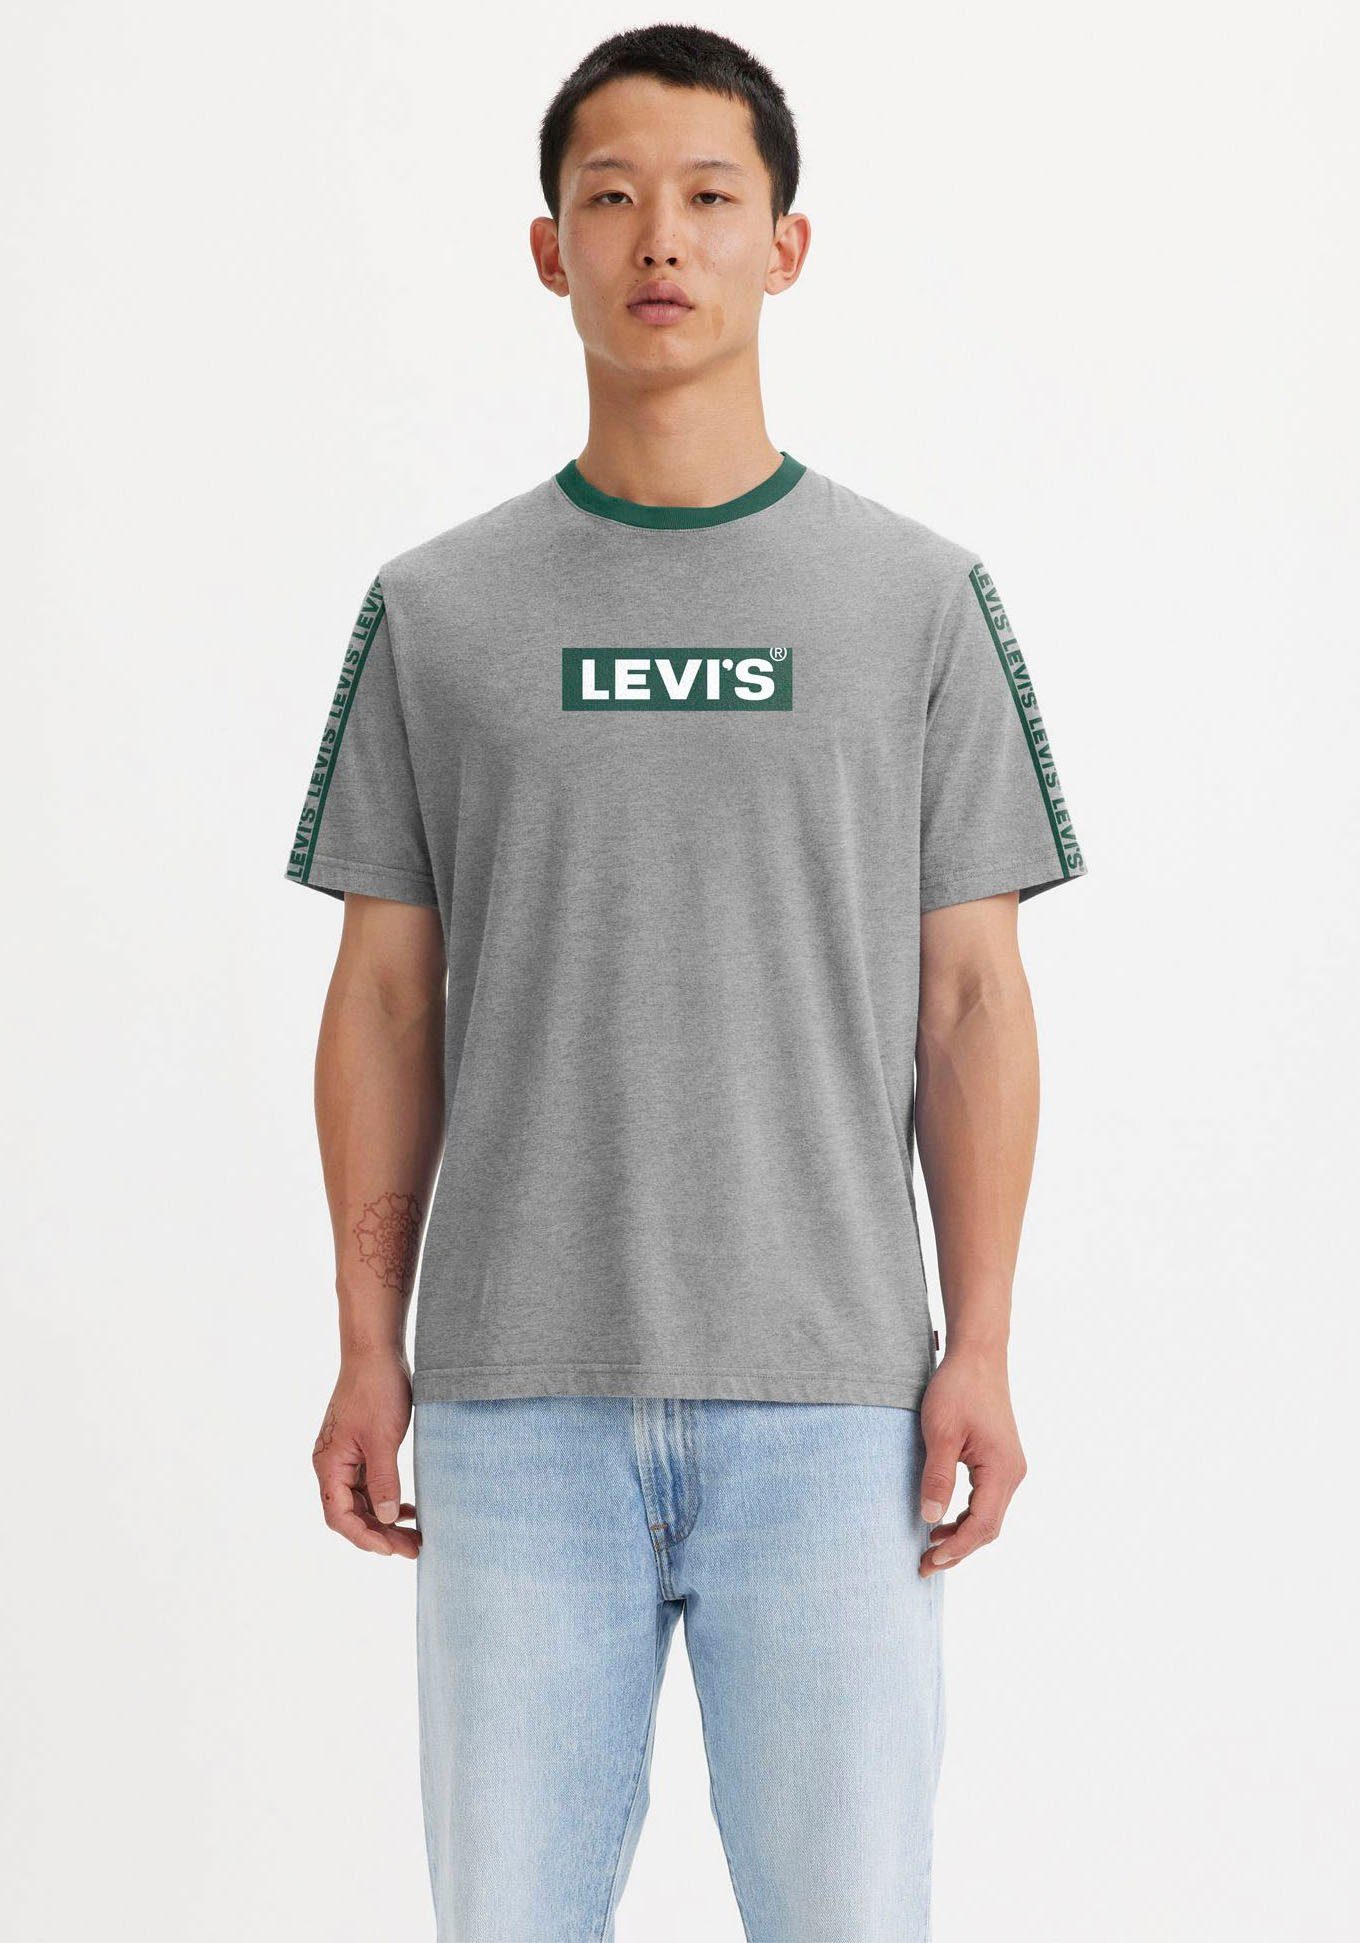 FIT TEE Logoprint Levi's® vorn RELAXED grau mit meliert Rundhalsshirt